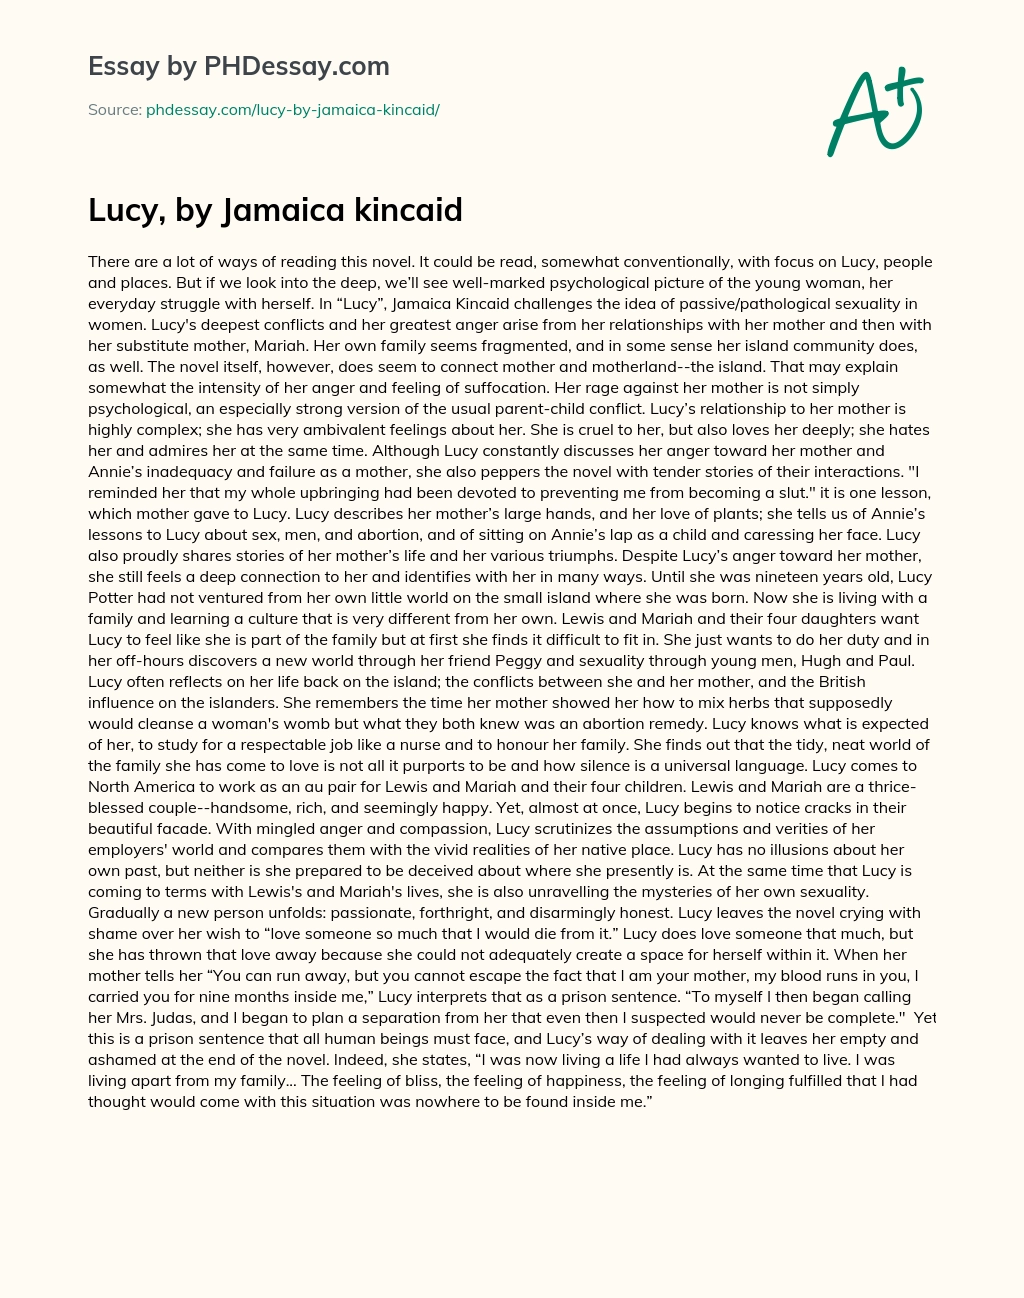 Lucy, by Jamaica kincaid essay